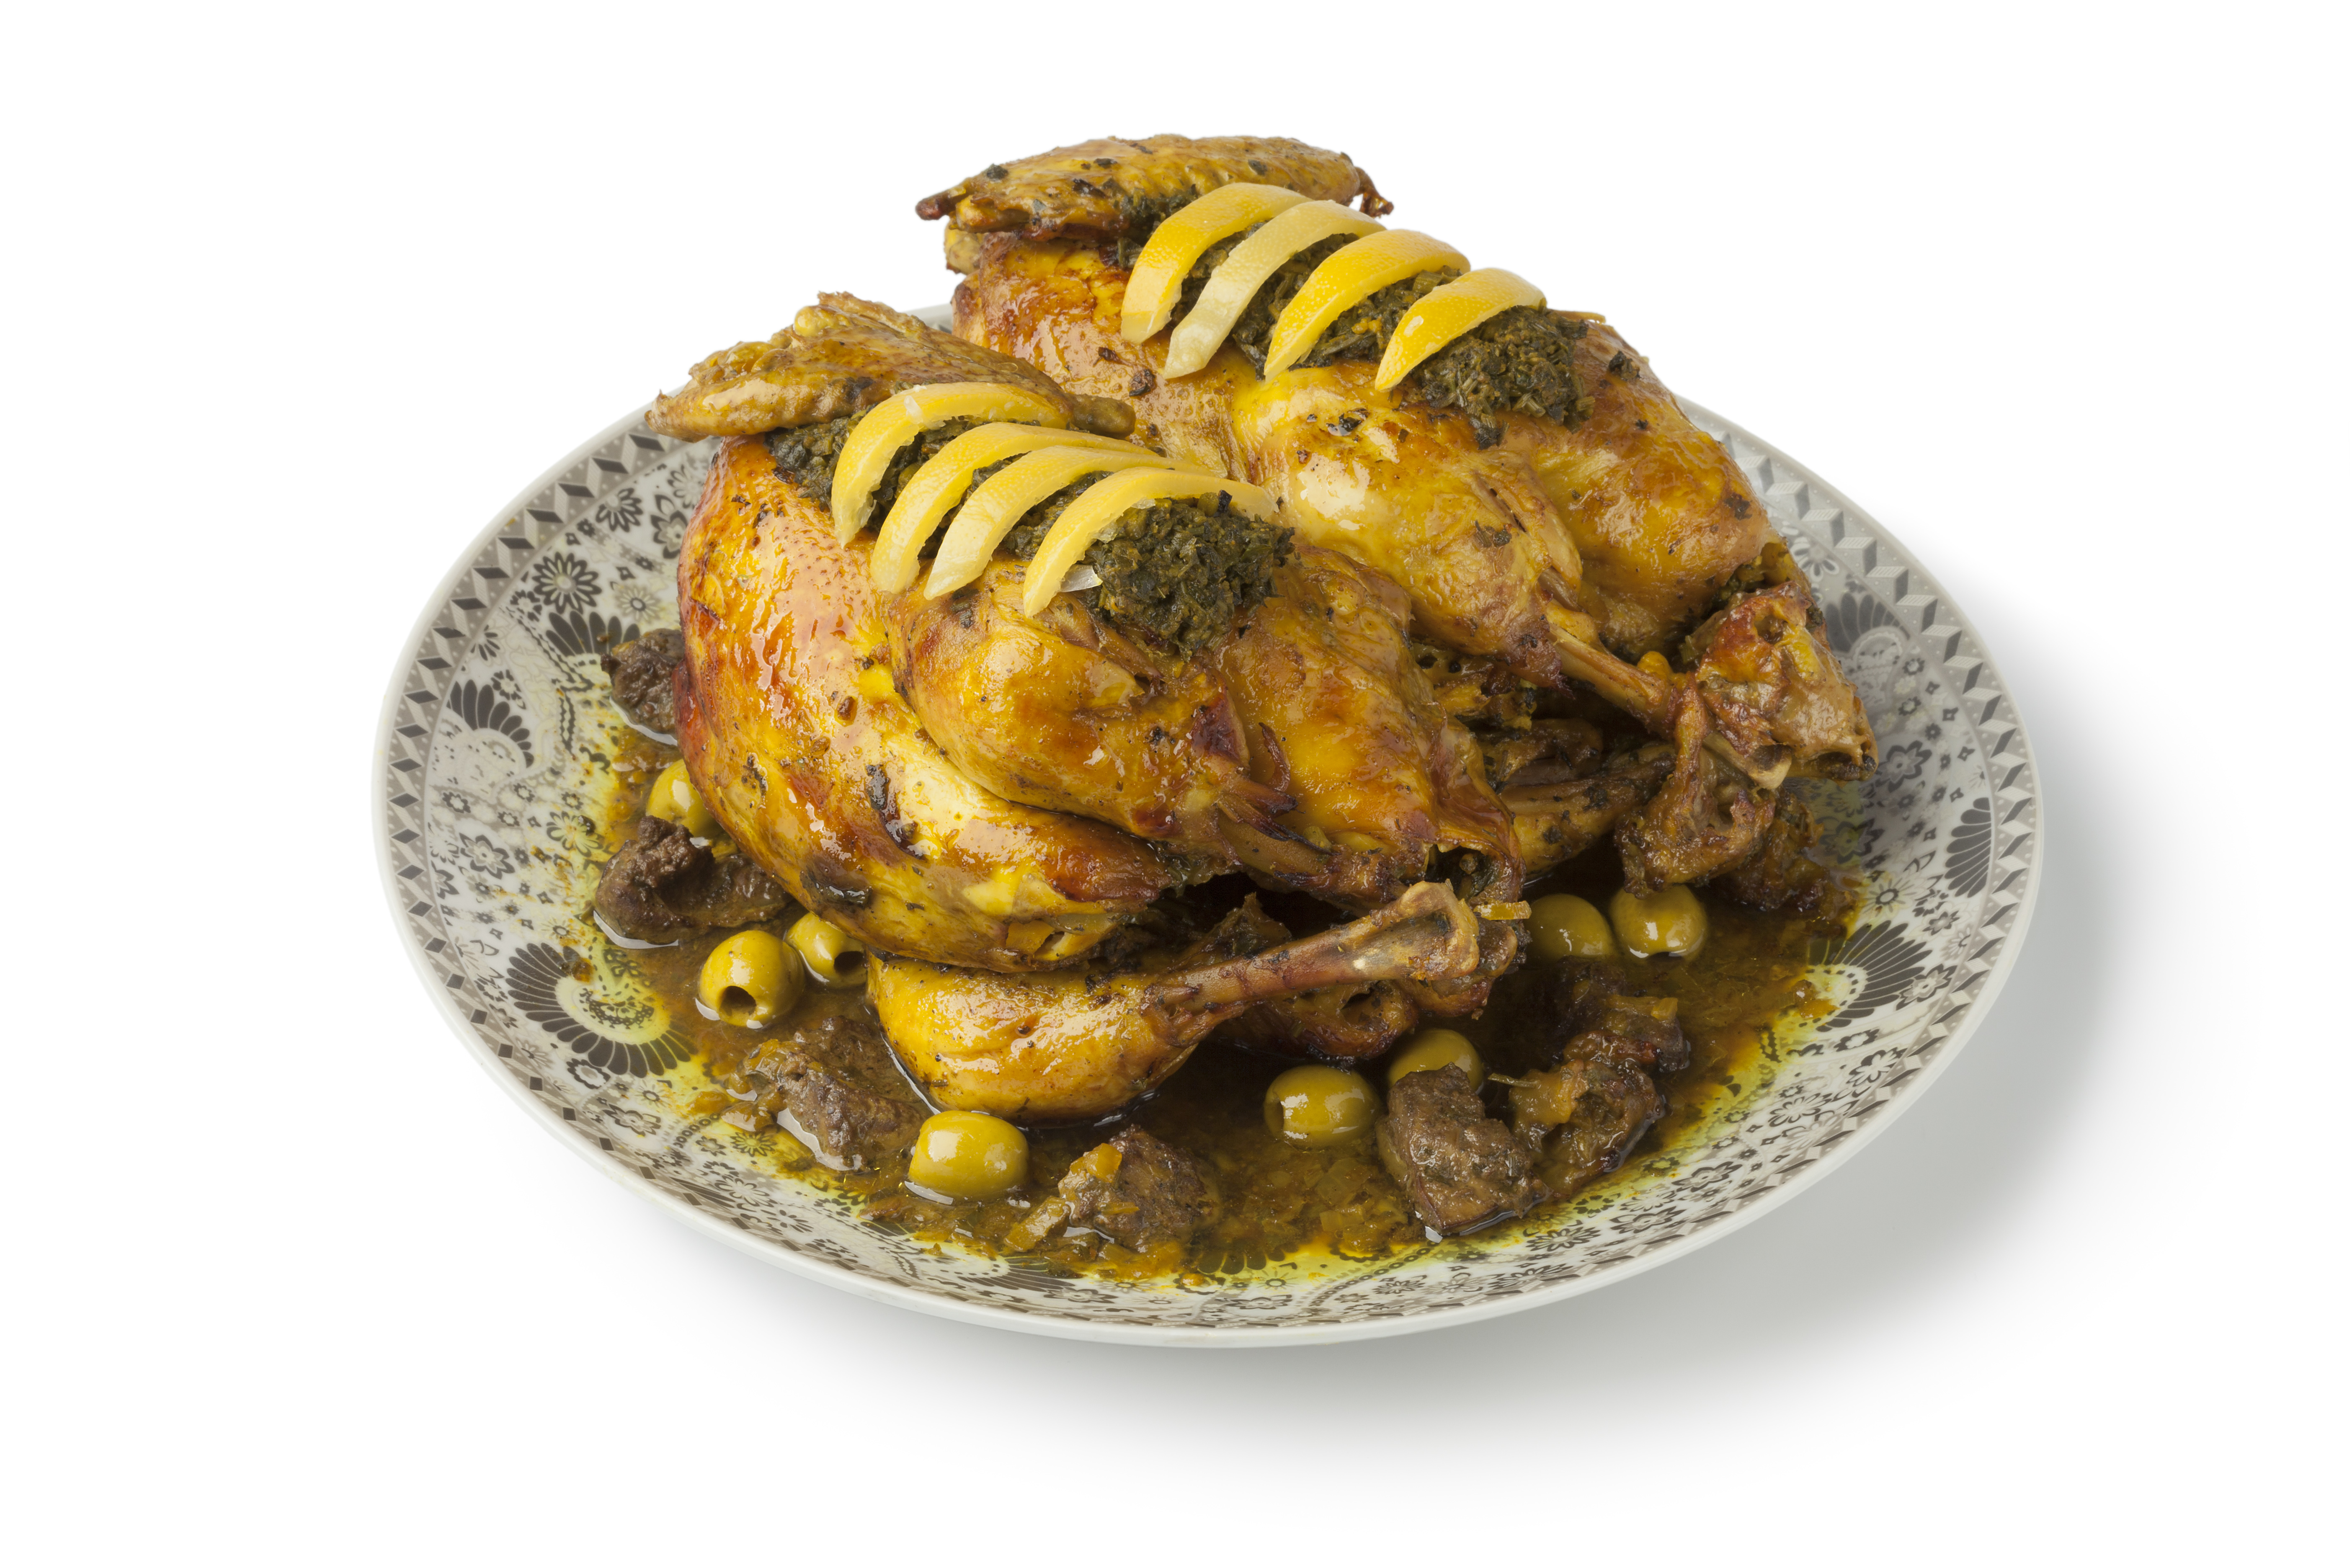 moroccan chicken dish with chermoula 2021 08 26 16 56 34 utc